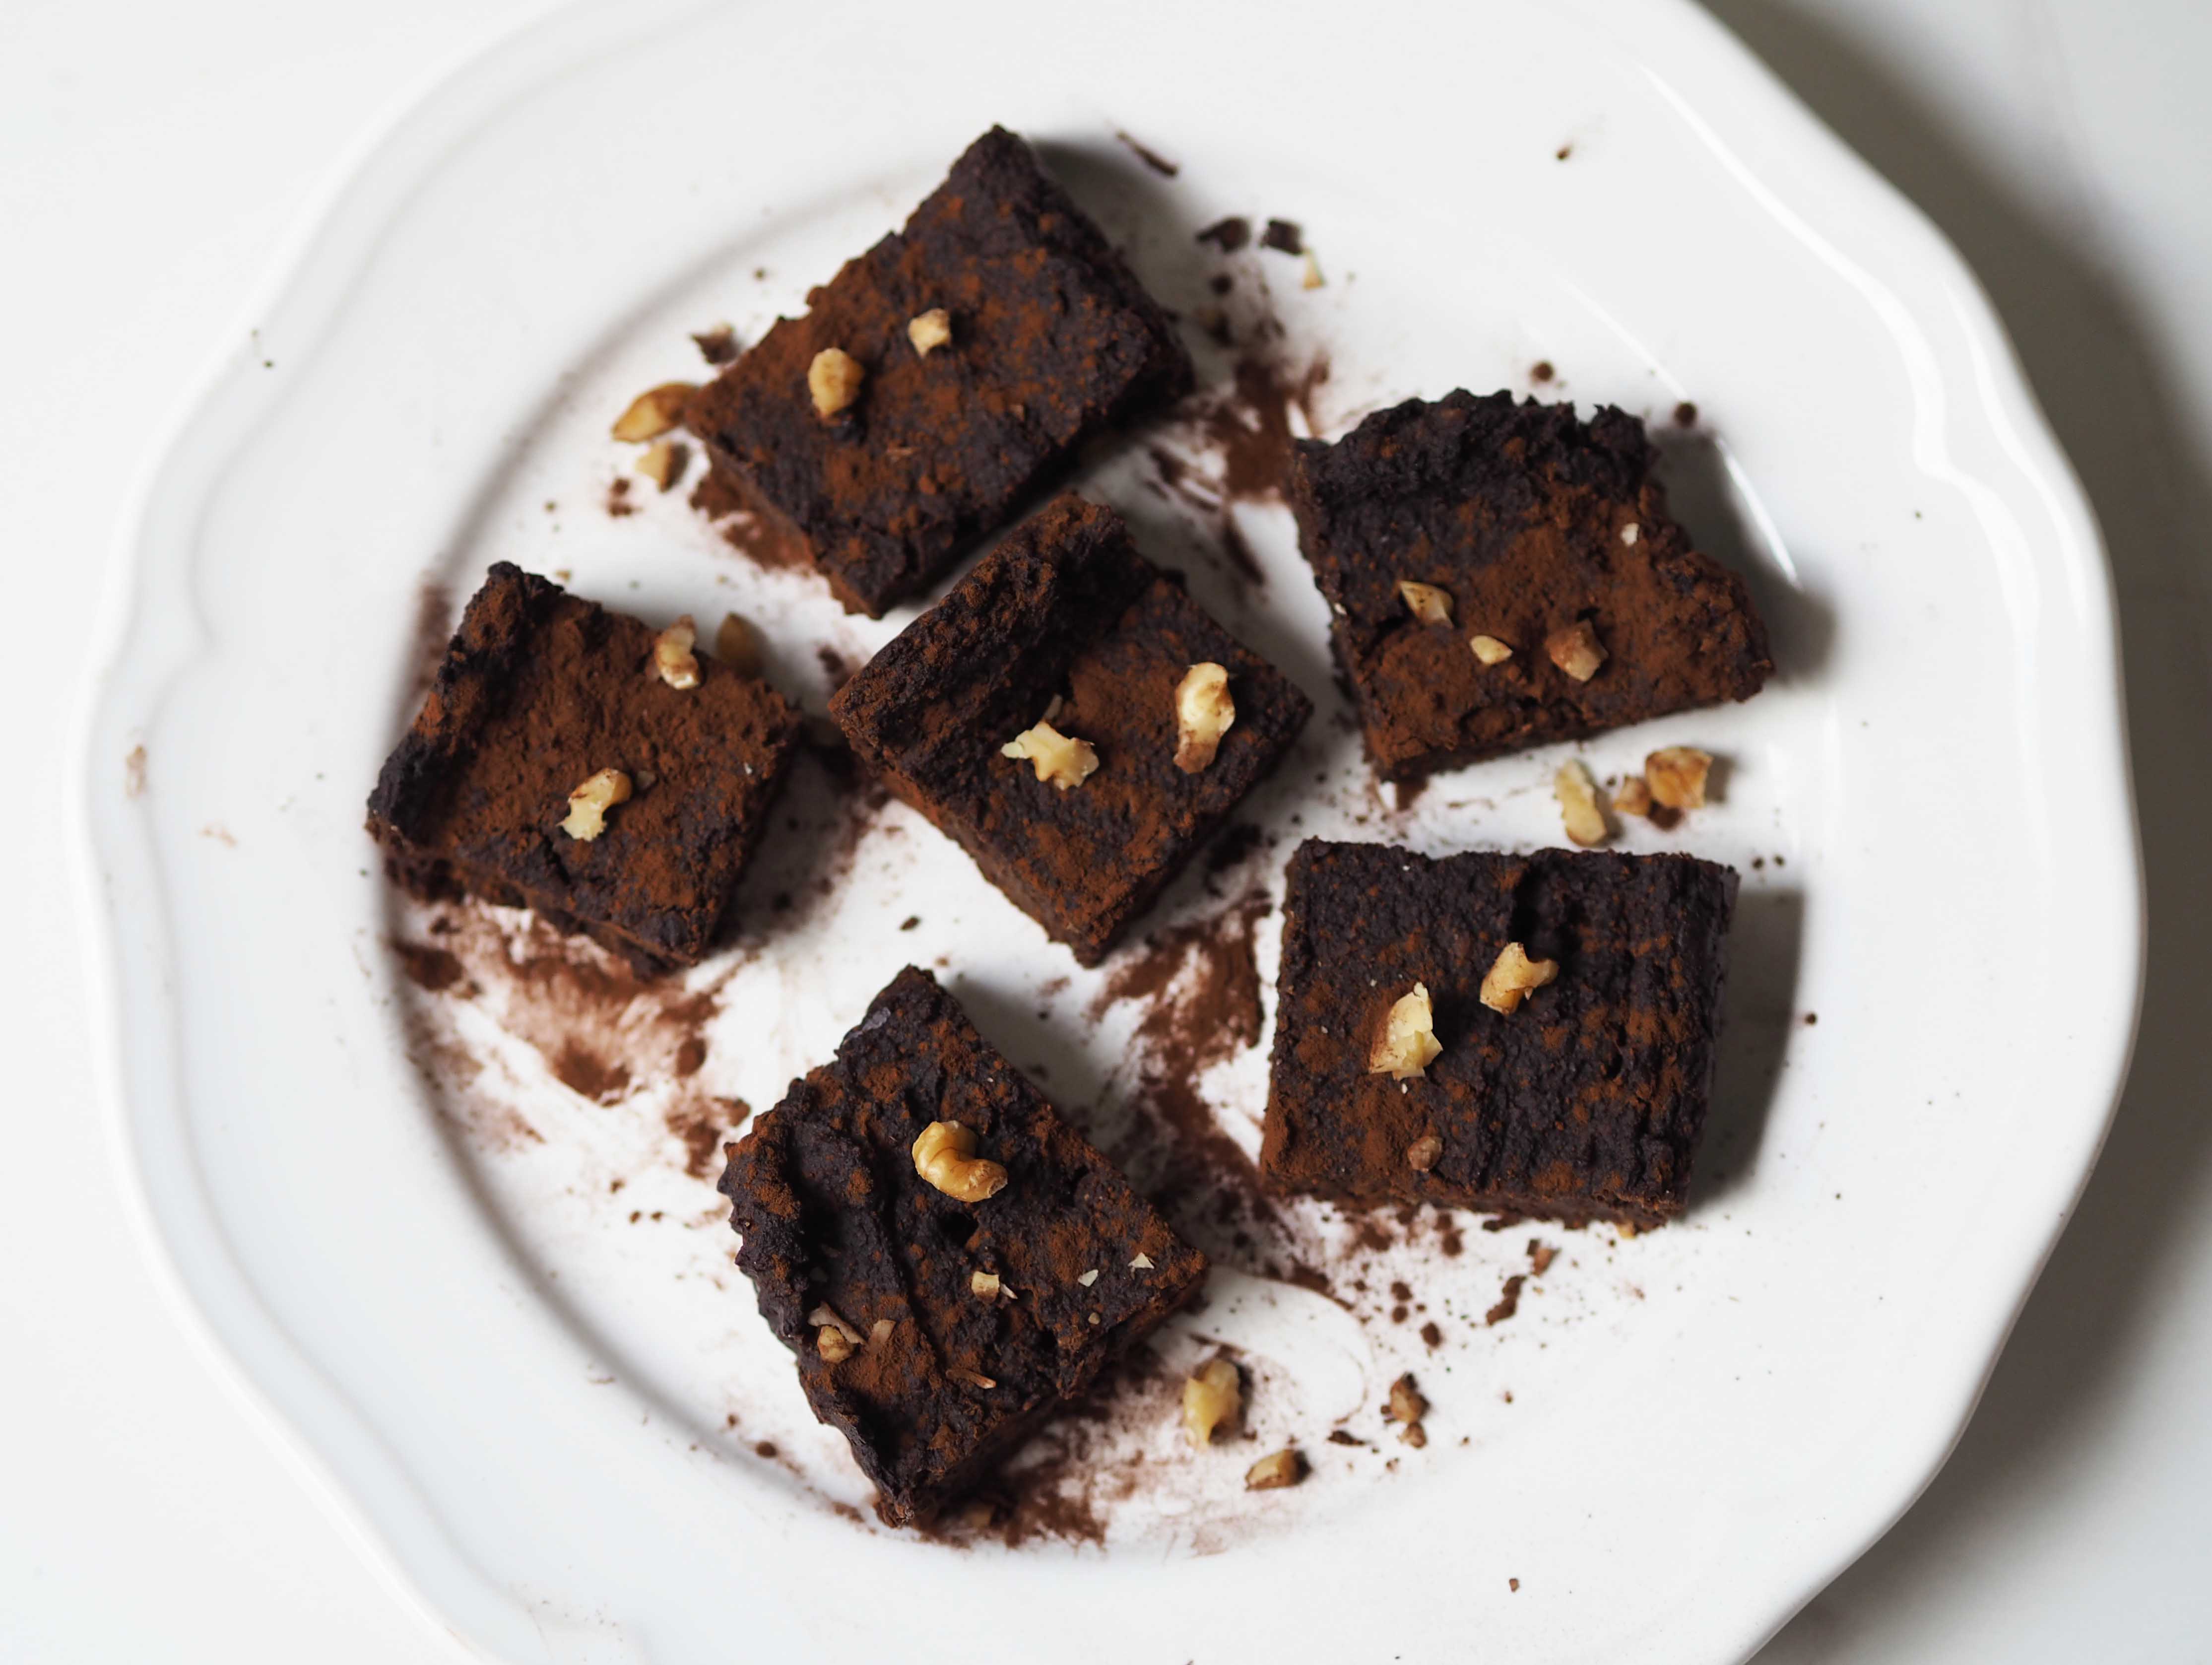 Cómo hacer un brownie sano y riquísimo